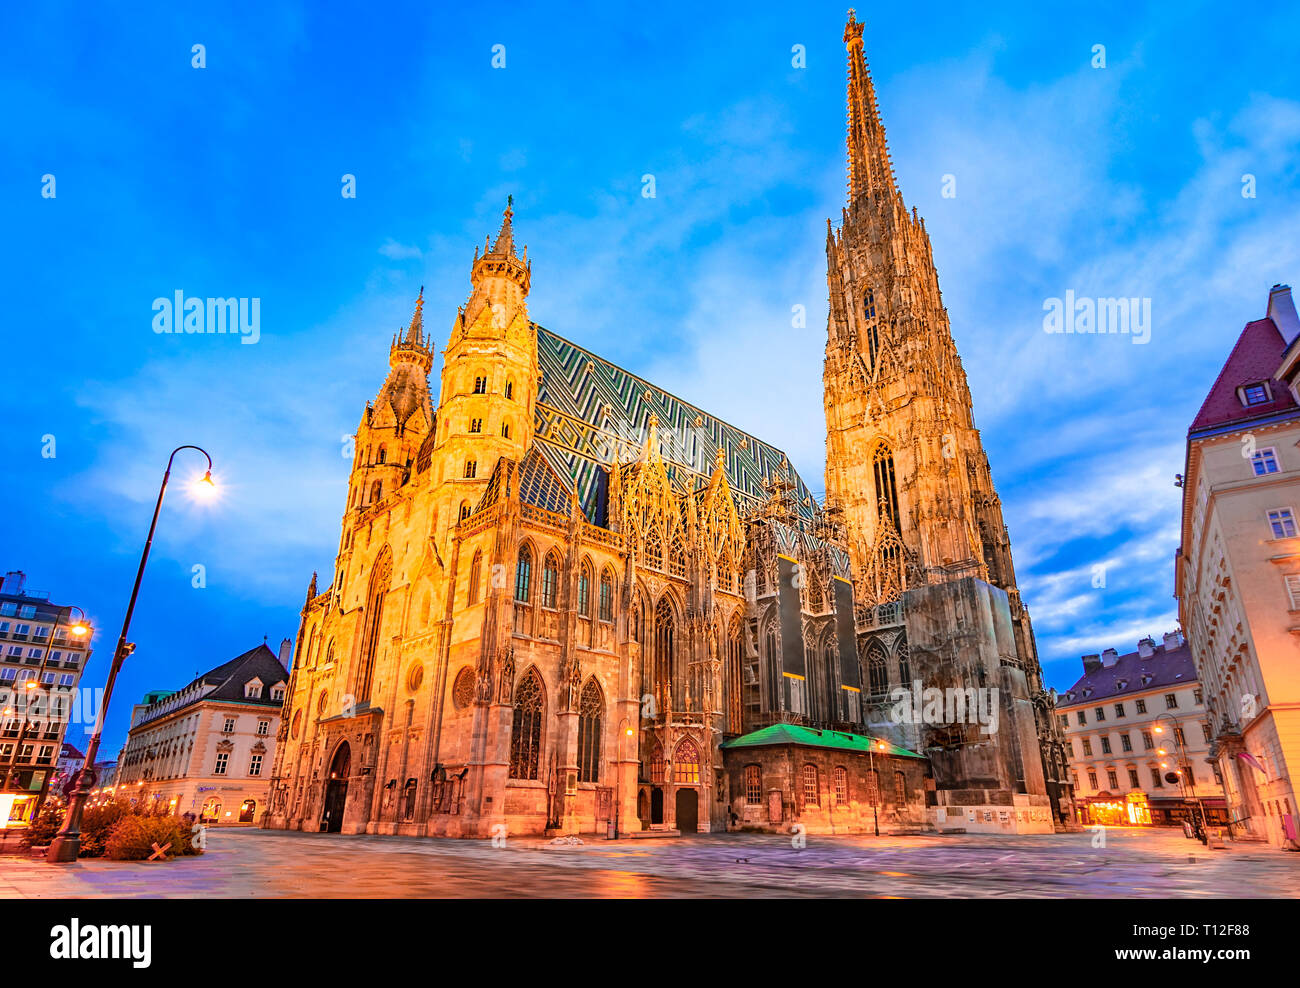 Wien, Österreich, Europa: Stephansdom Stephansdom, Stephansplatz oder früh am Morgen. Stockfoto